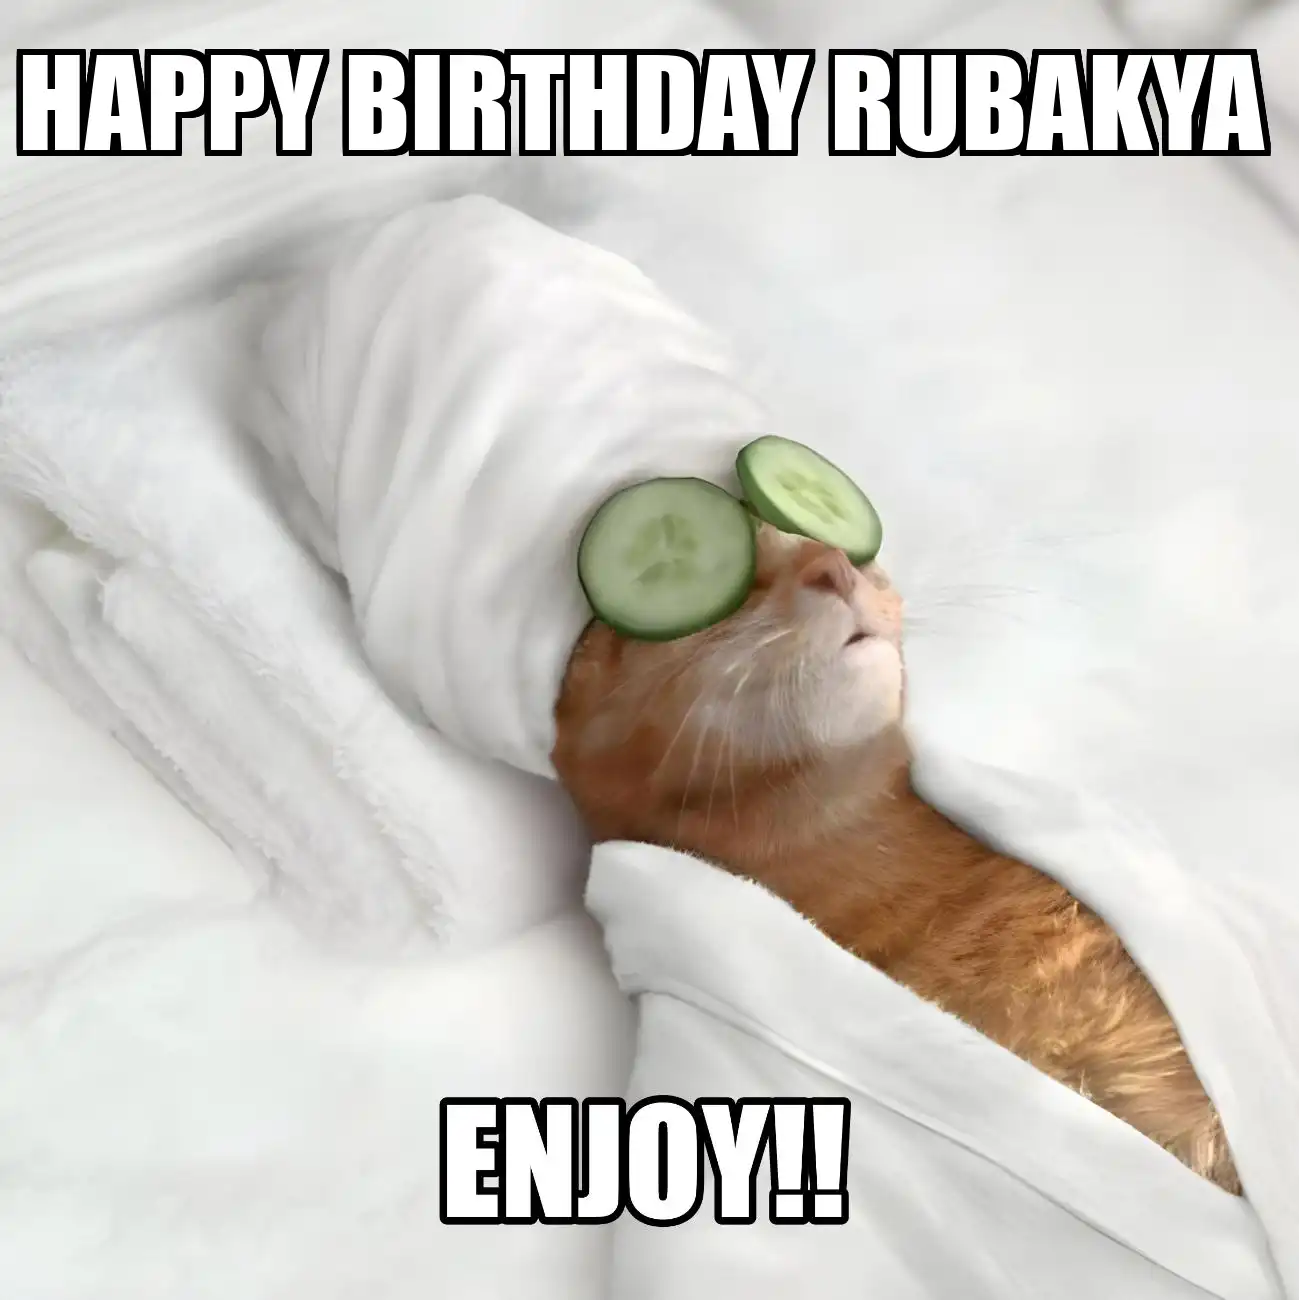 Happy Birthday Rubakya Enjoy Cat Meme